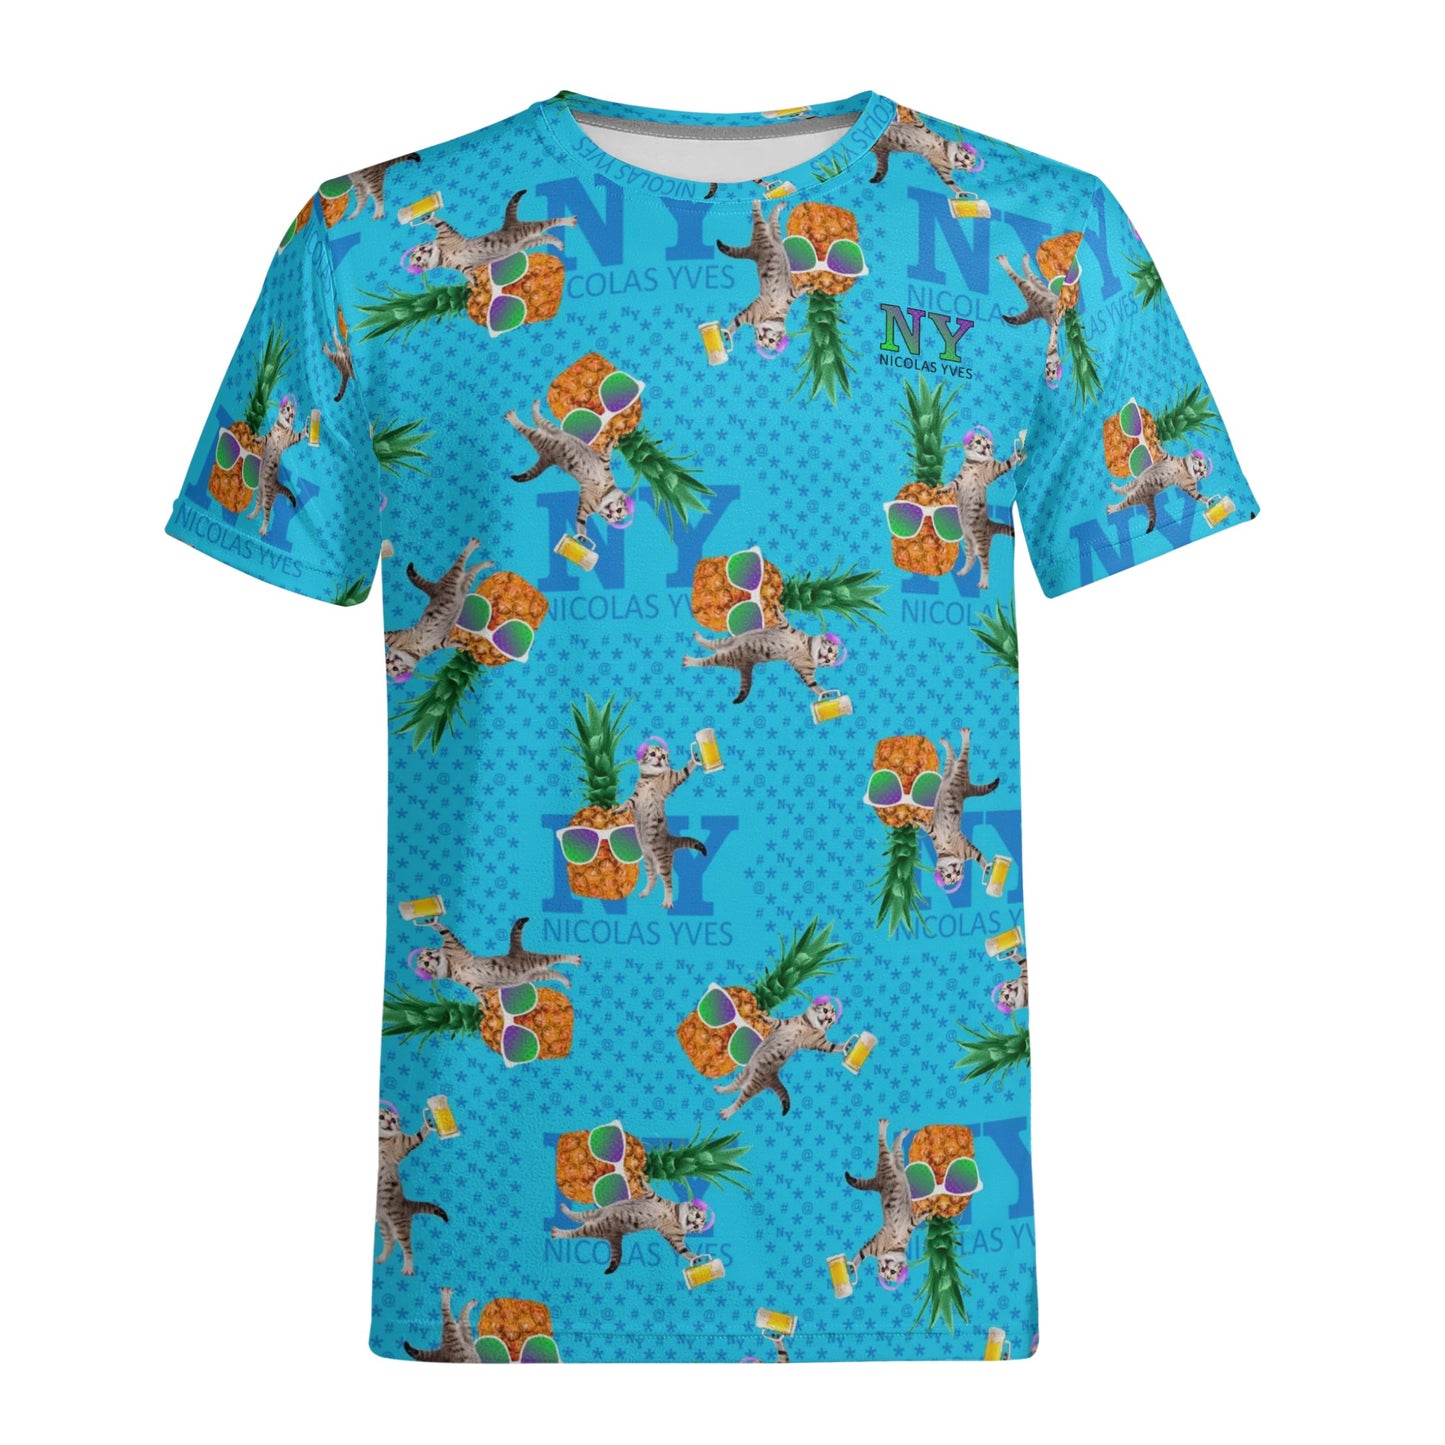 Un Tee-shirt, des Chats, des Ananas et de la Bière ! Le T-shirt Bleu Kitsch Chananas de Nicolas Yves. Lunettes reflet violet vert 04